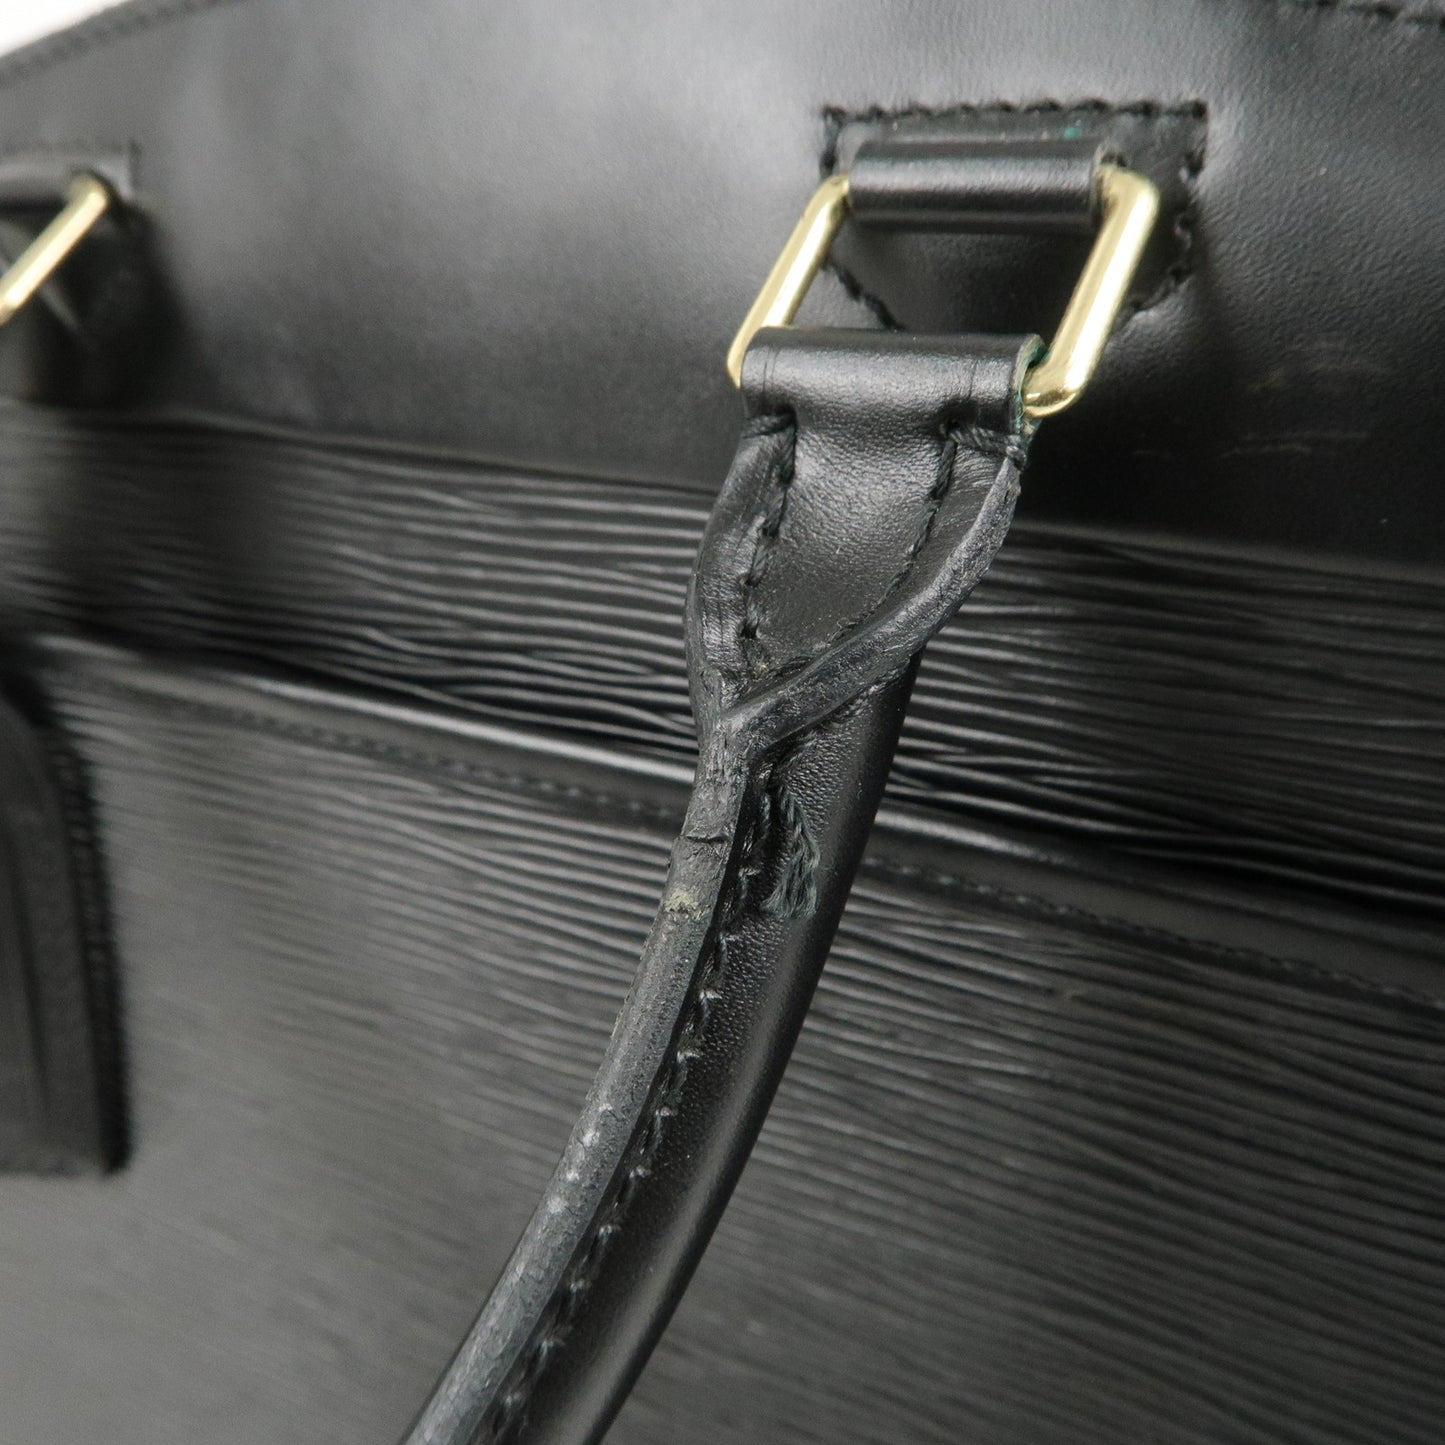 Louis Vuitton Epi Leather Riviera Hand Bag Noir Black M48182